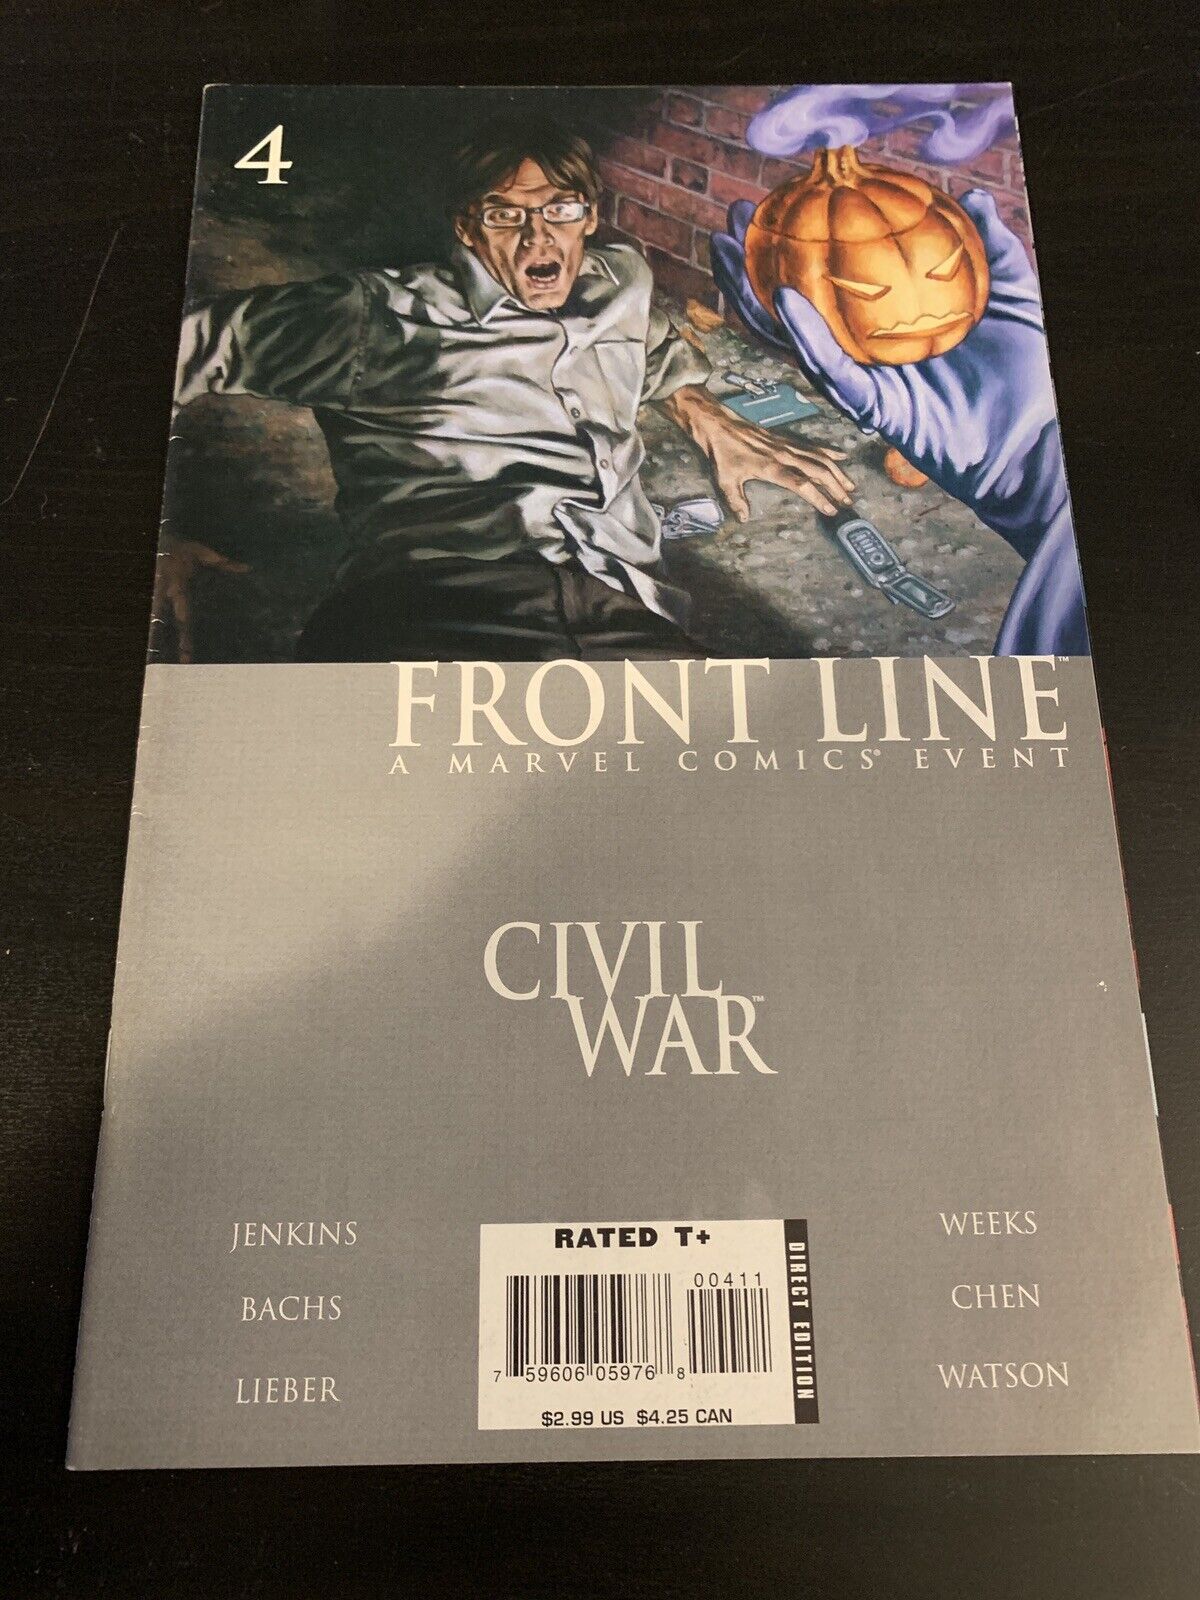 Marvel 2006 - Civil War Front Line #4 - Jenkins - July 26, 2006